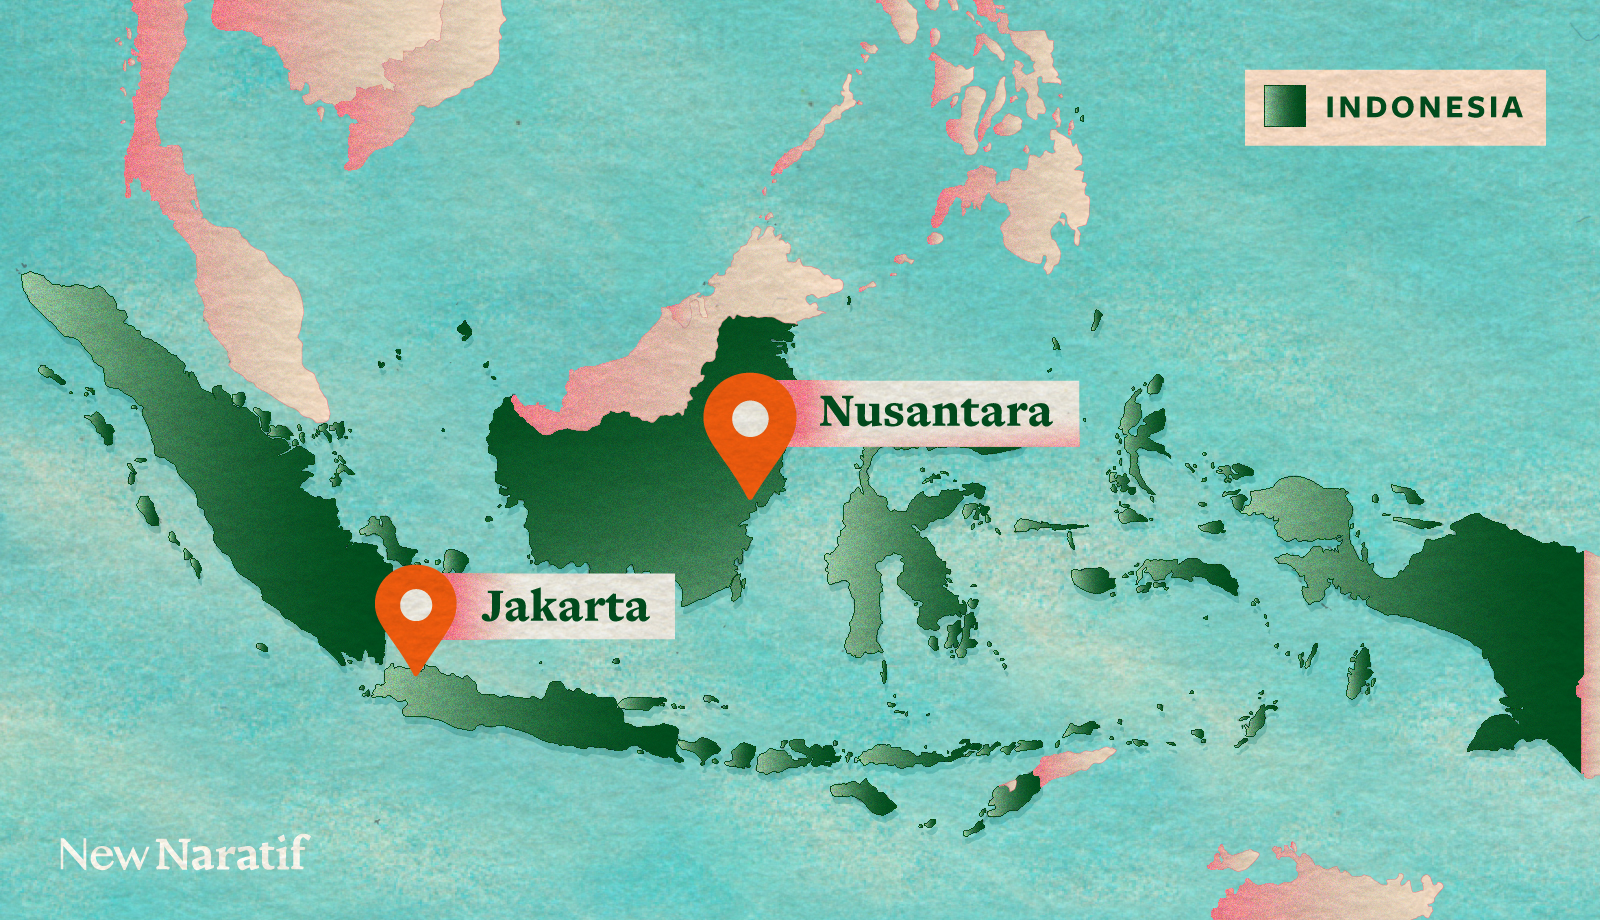 Map showing the locations of Jakarta and Nusantara

Peta yang menunjukkan lokasi Jakarta dan Nusantara